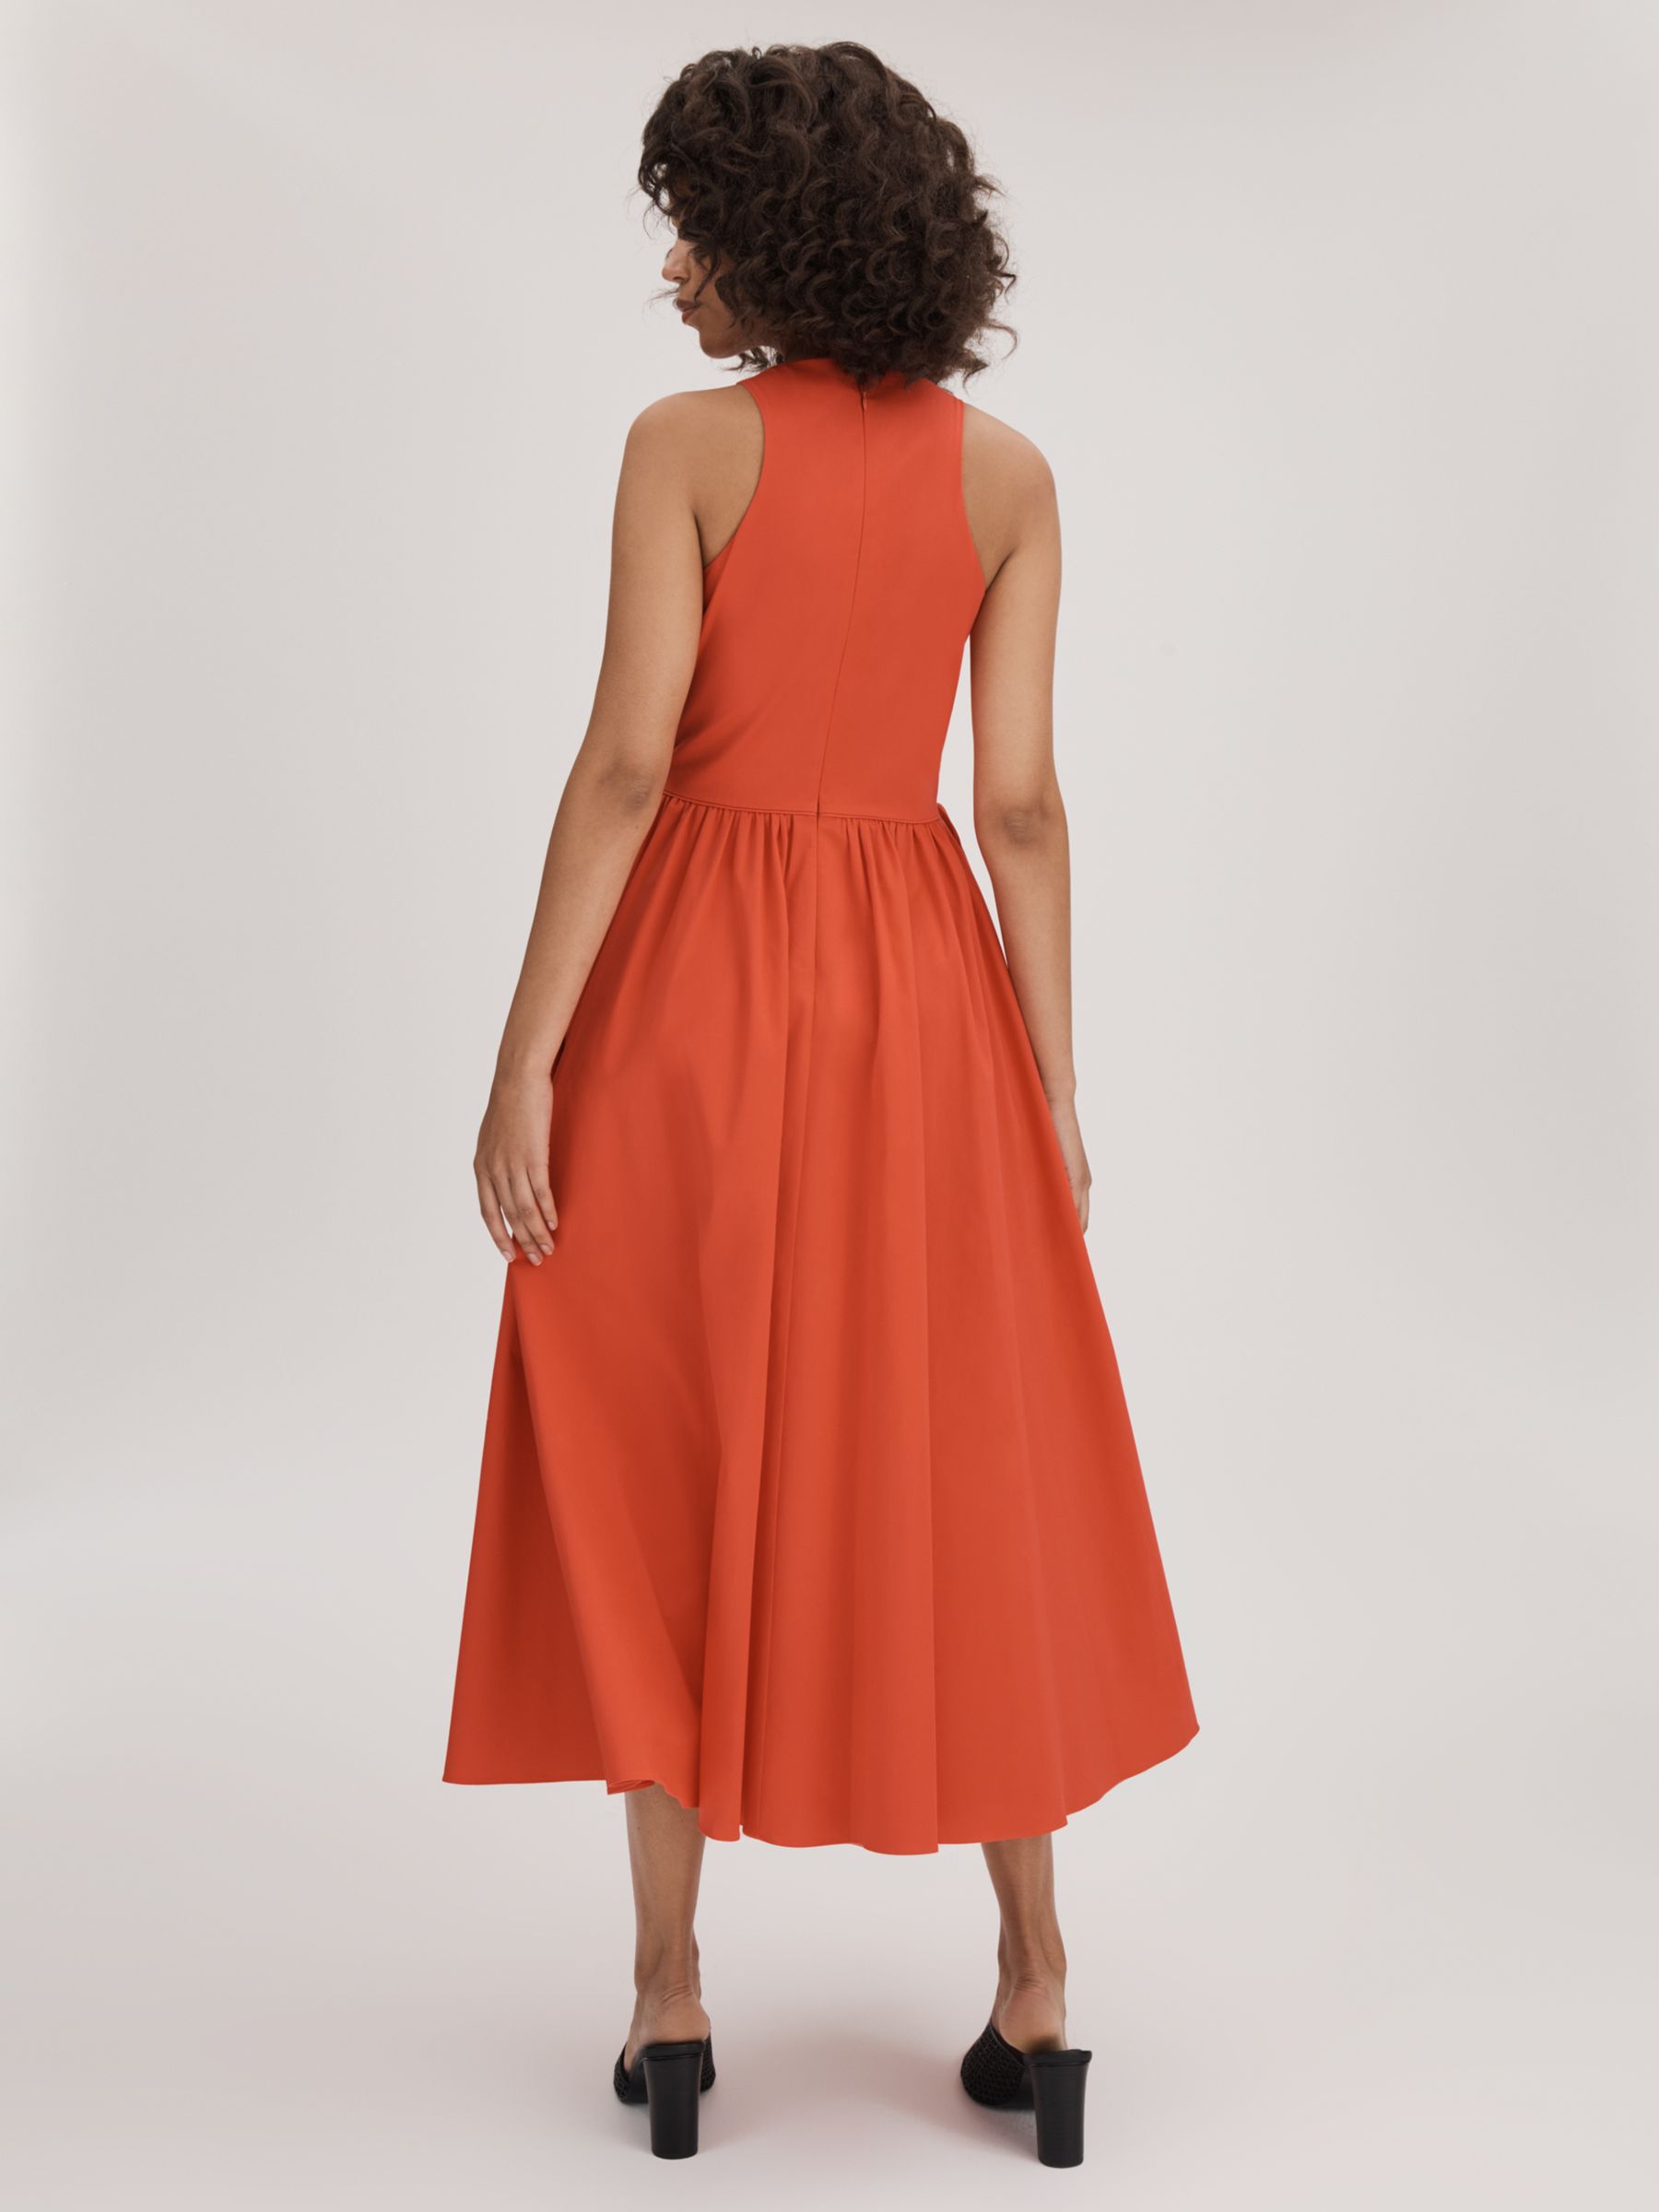 FLORERE Full Skirt Cotton Blend Dress, Deep Coral, 12